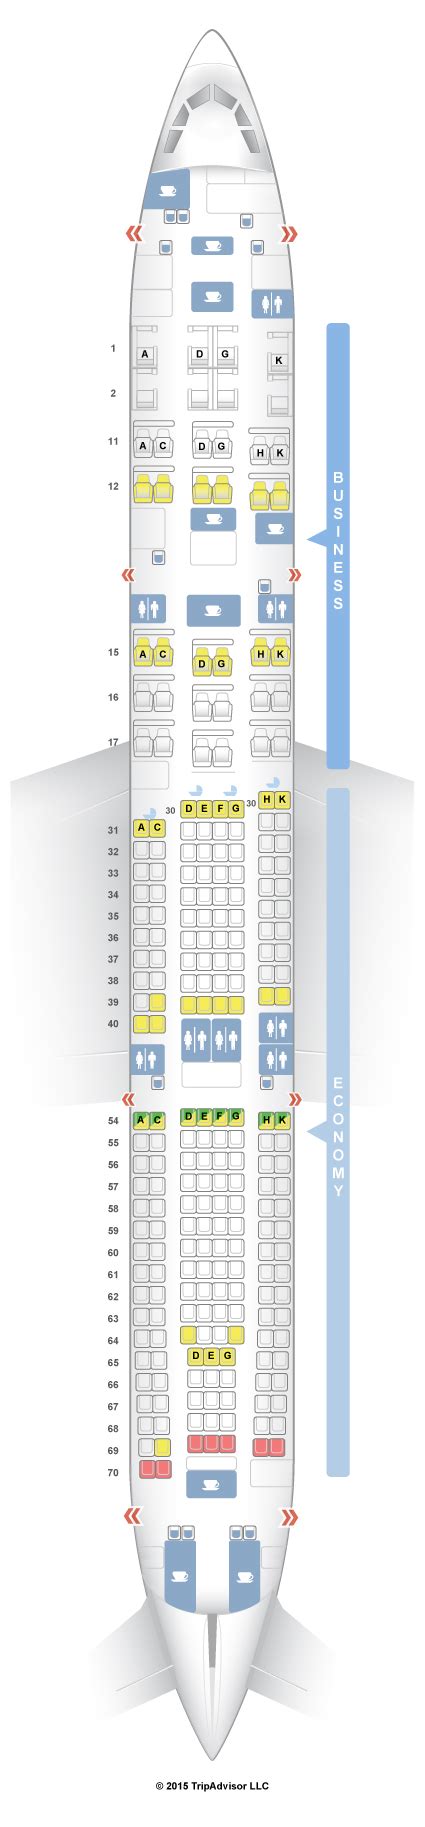 Seatguru Seat Map Srilankan Airlines